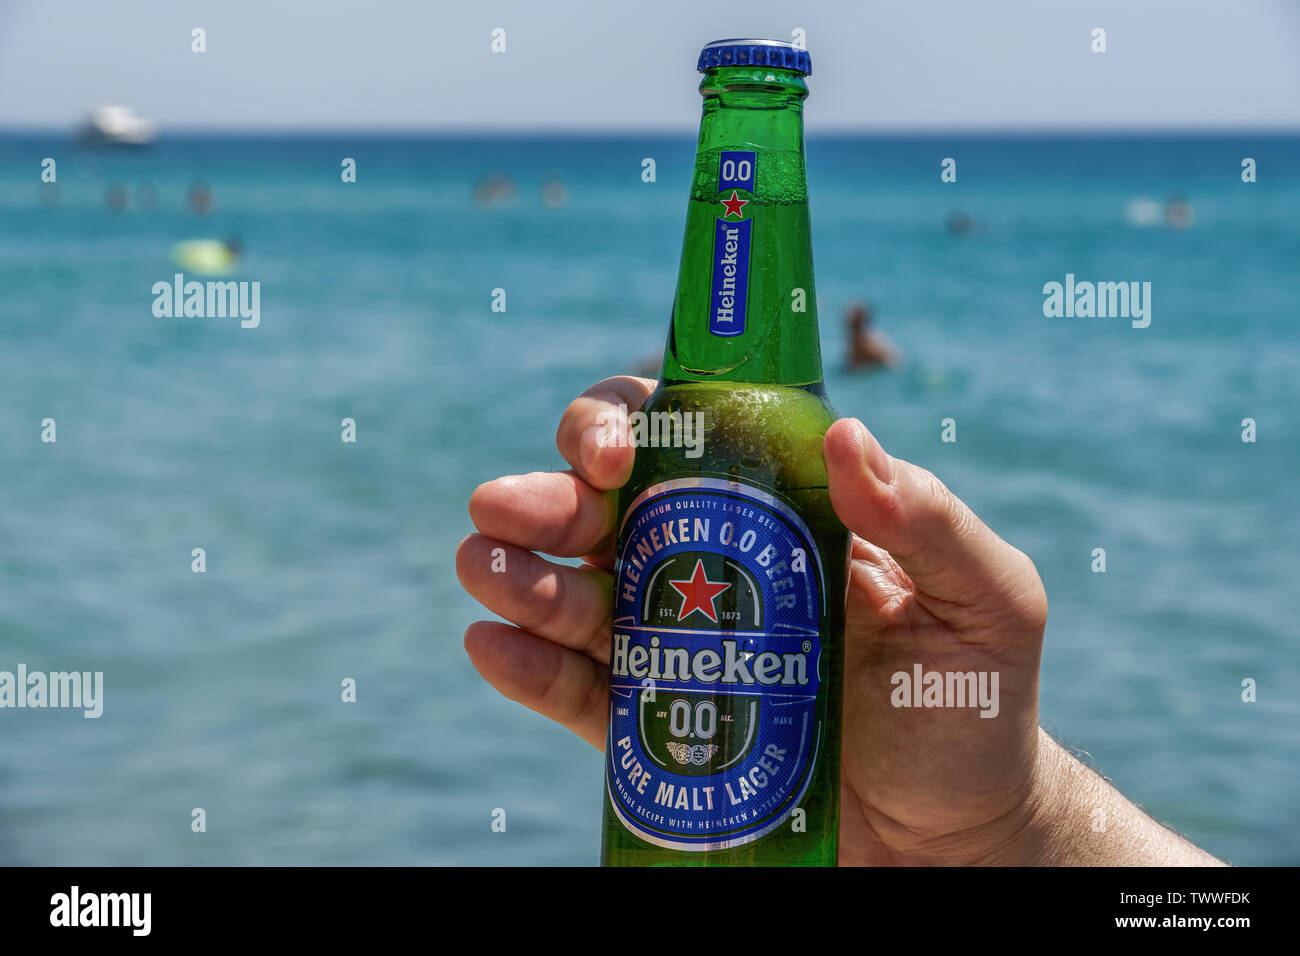 Hand holding Heineken null Alkohol Bier Flasche am Meer. Alkoholfreien Pilsener auf einem 33-cl-Glasflasche mit unscharfen Strand Meerblick Hintergrund. Stockfoto